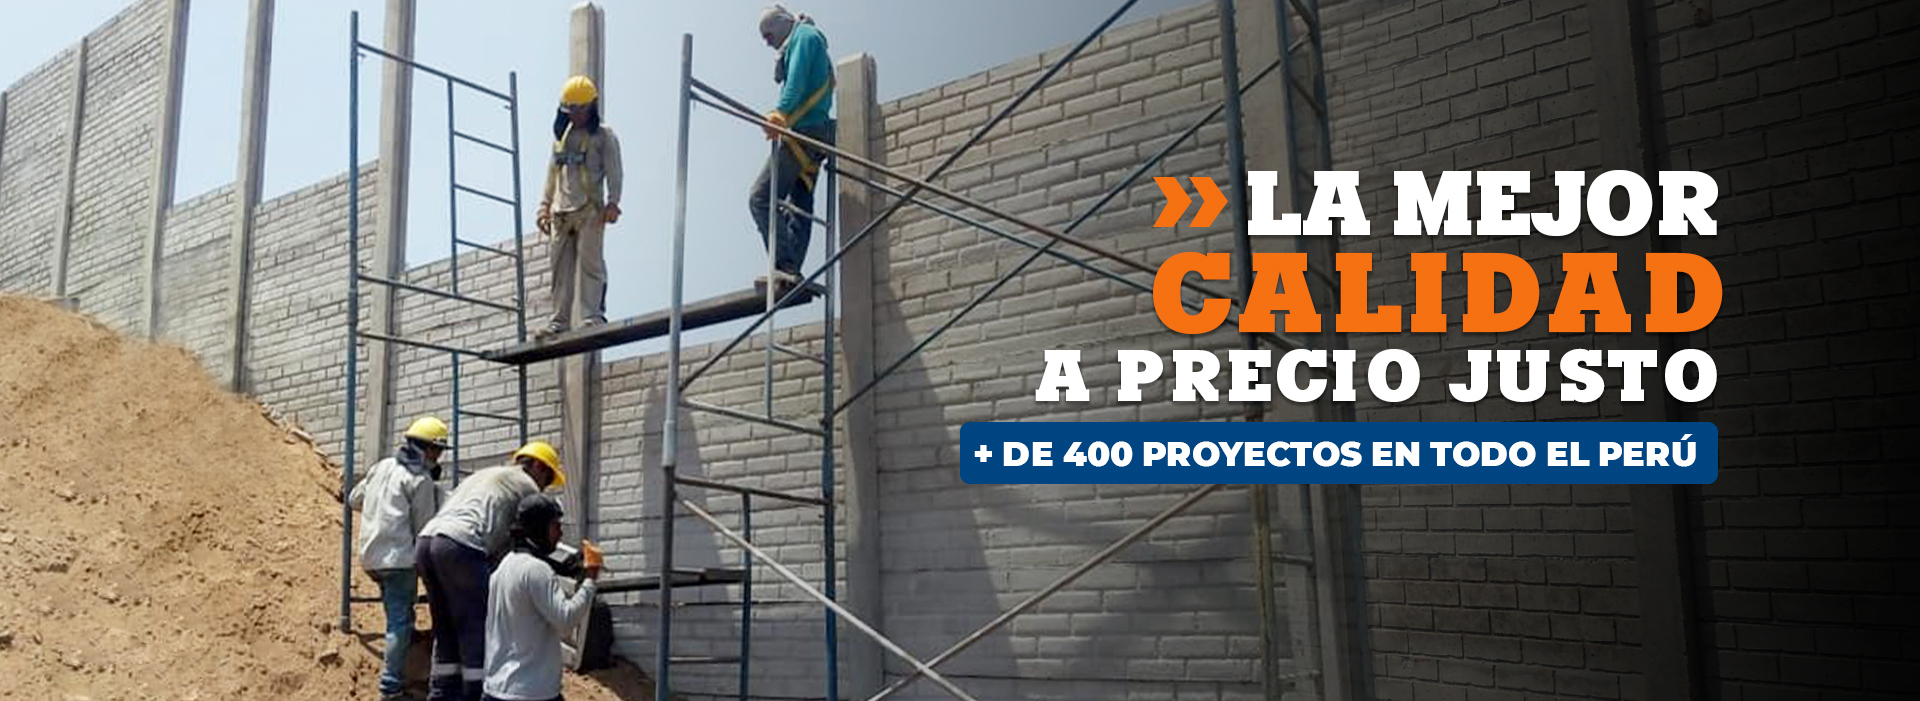 Cercos Prefabricados Concreto Lima Peru